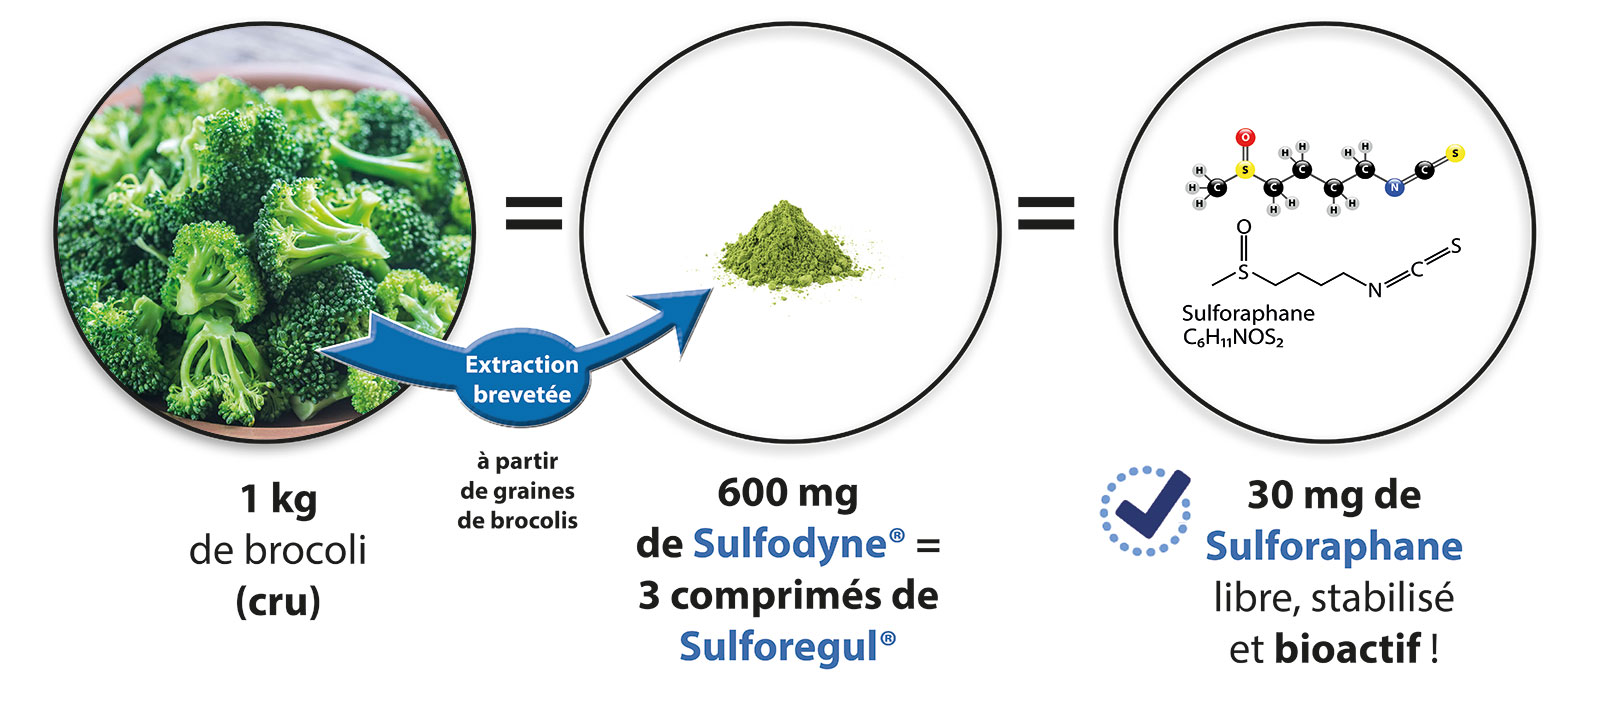 380 grammes de brocolis = 200 mg de sulfodyne = 10 mg de Sulforaphane libre